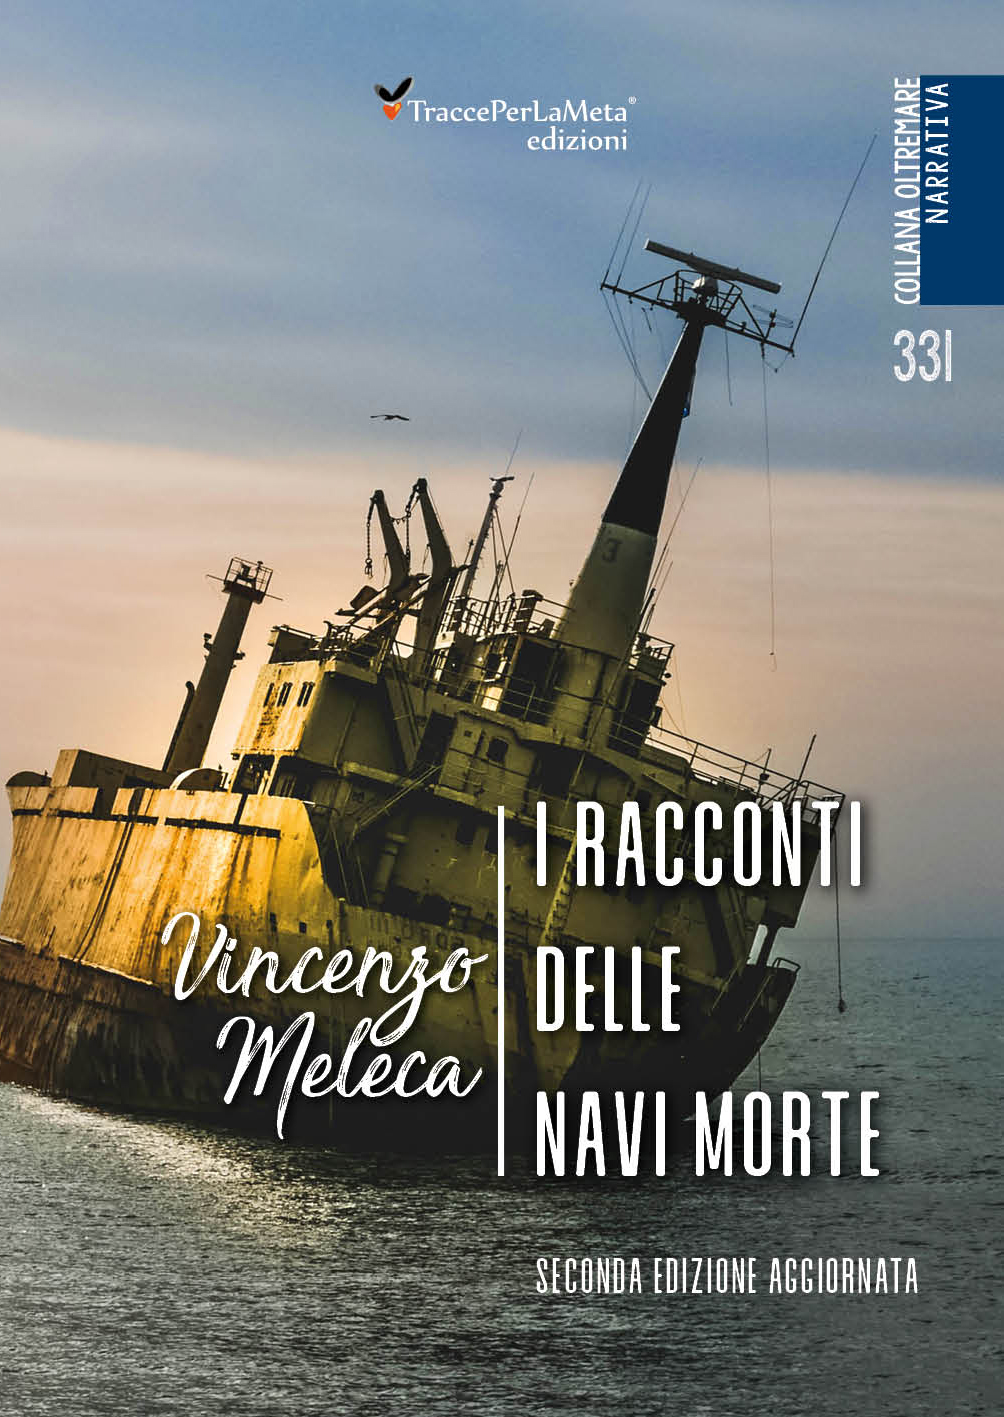 E’ in libreria la seconda edizione di “I racconti delle navi morte” di Vincenzo Meleca